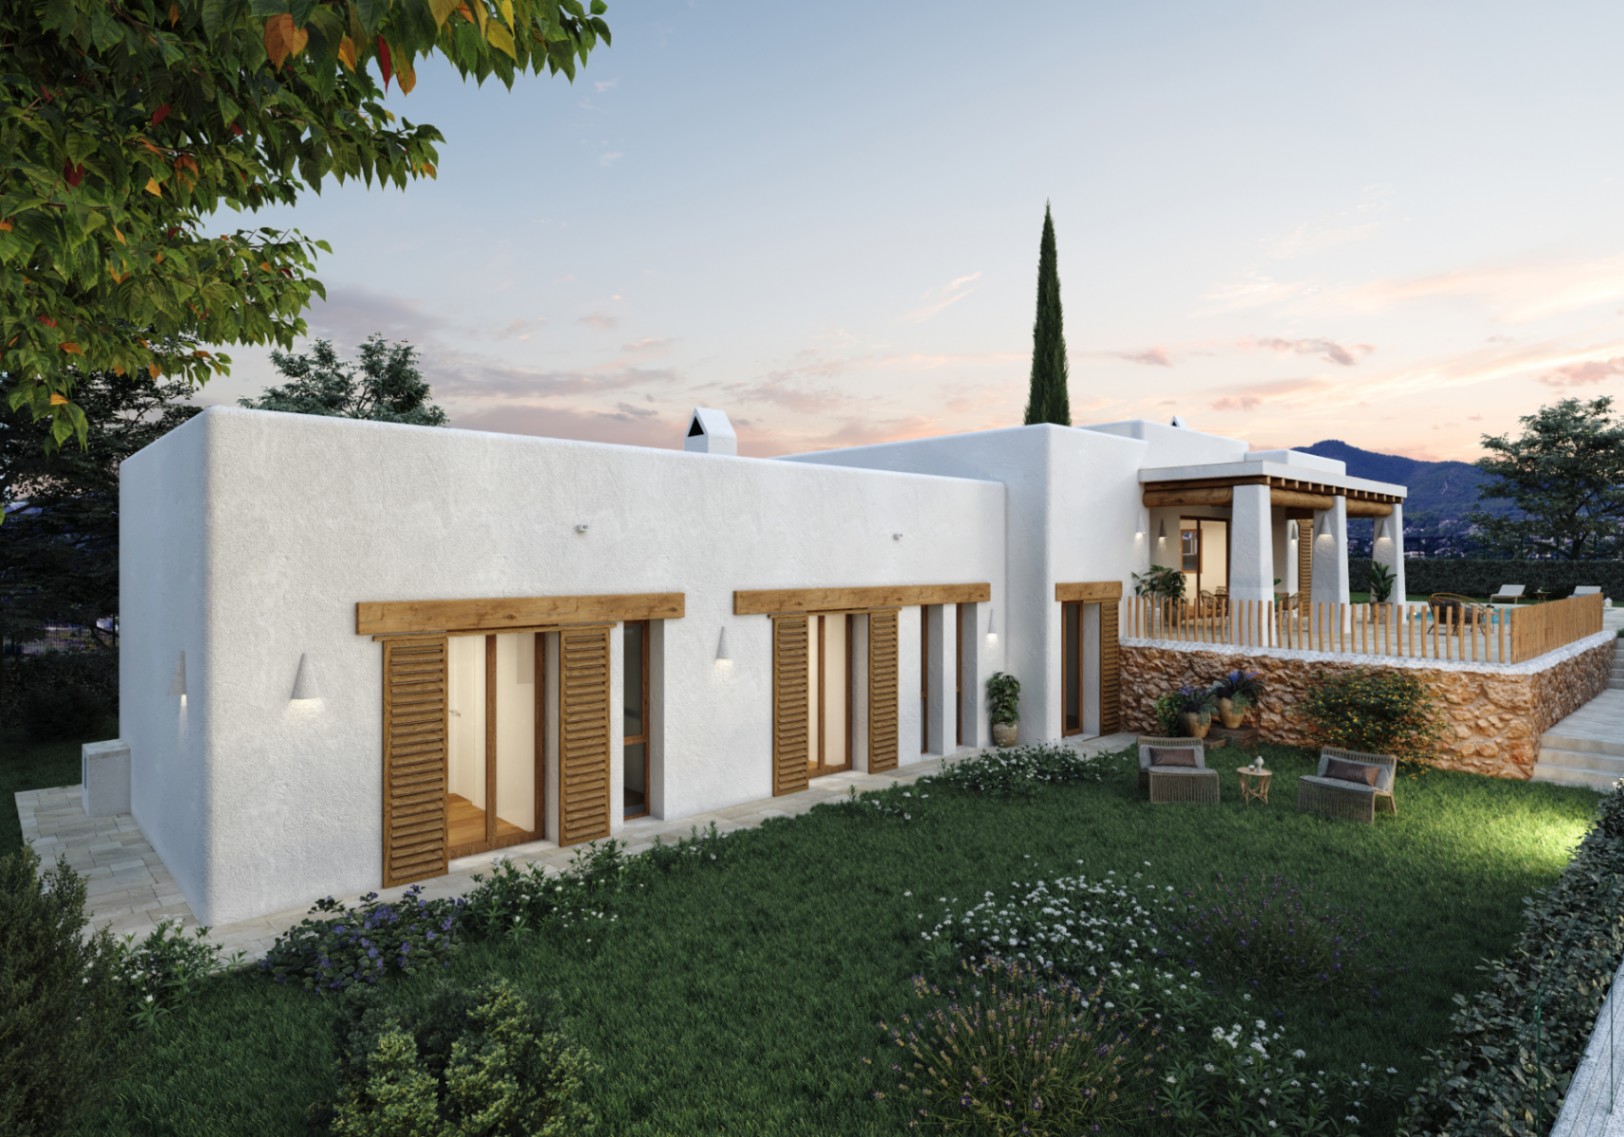 New build Ibizan style villa for sale in Las Lomas del Rey Jávea, Costa Blanca